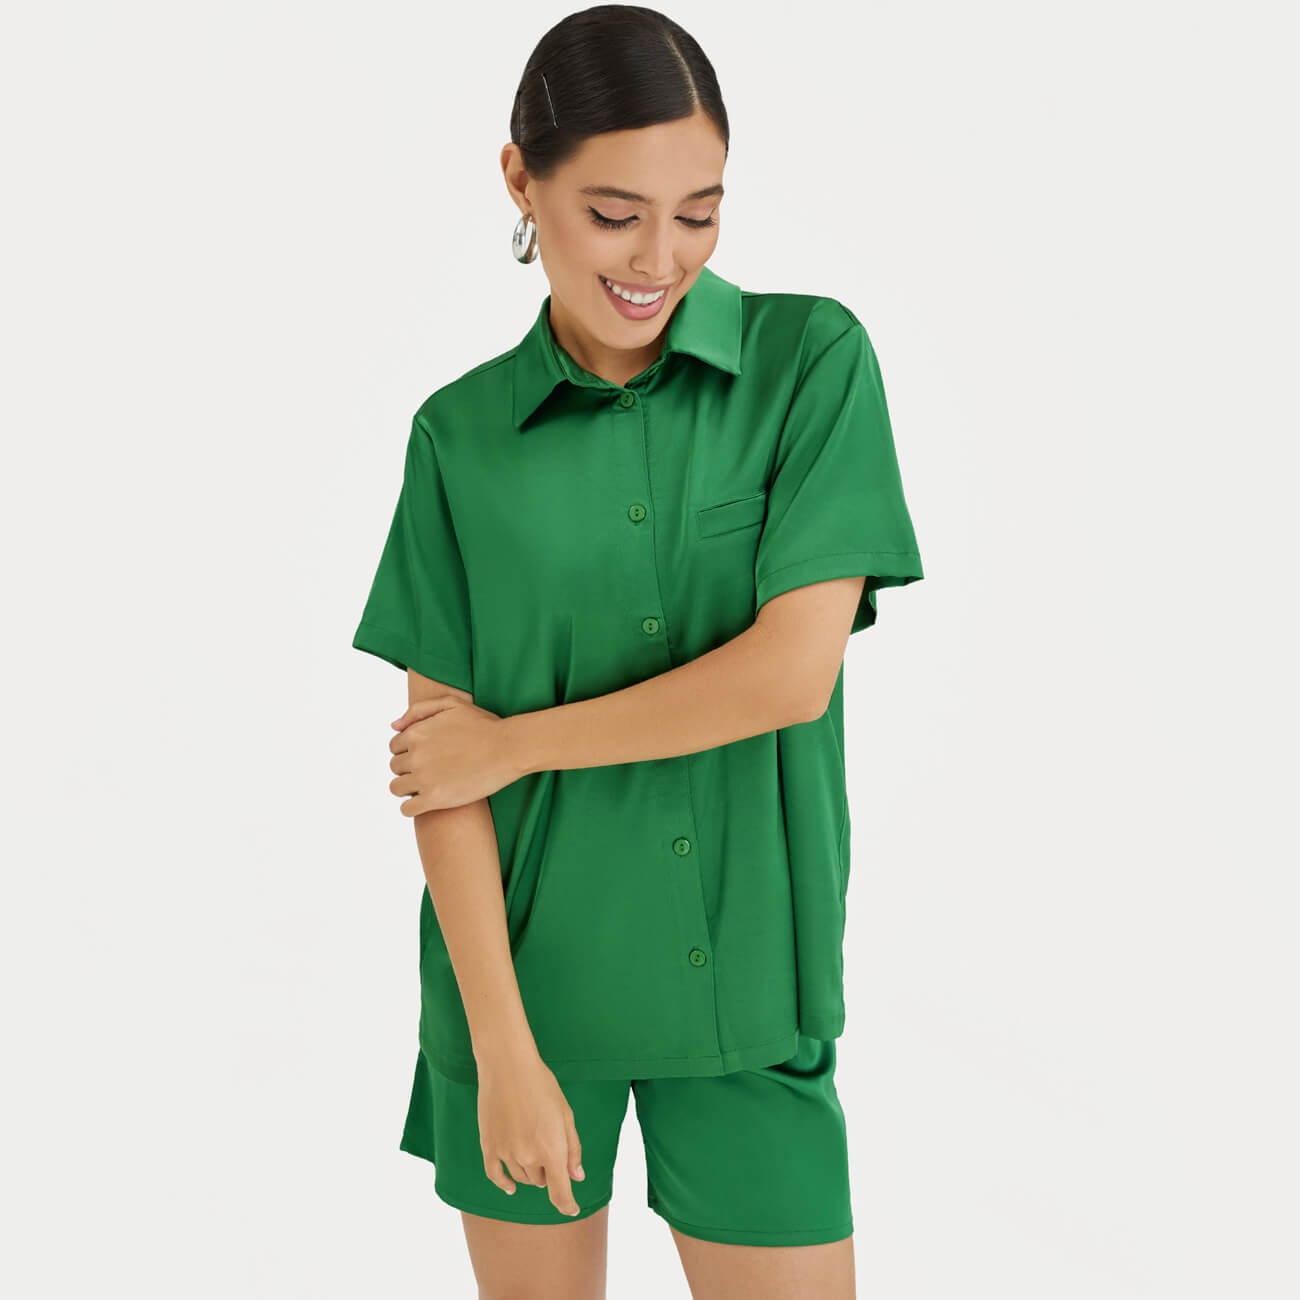 Рубашка женская, р. XL, с коротким рукавом, полиэстер/эластан, зеленая, Madeline мужские одноцветные рубашки летняя мода рубашка с коротким рукавом повседневная оверсайз топы мужская одежда